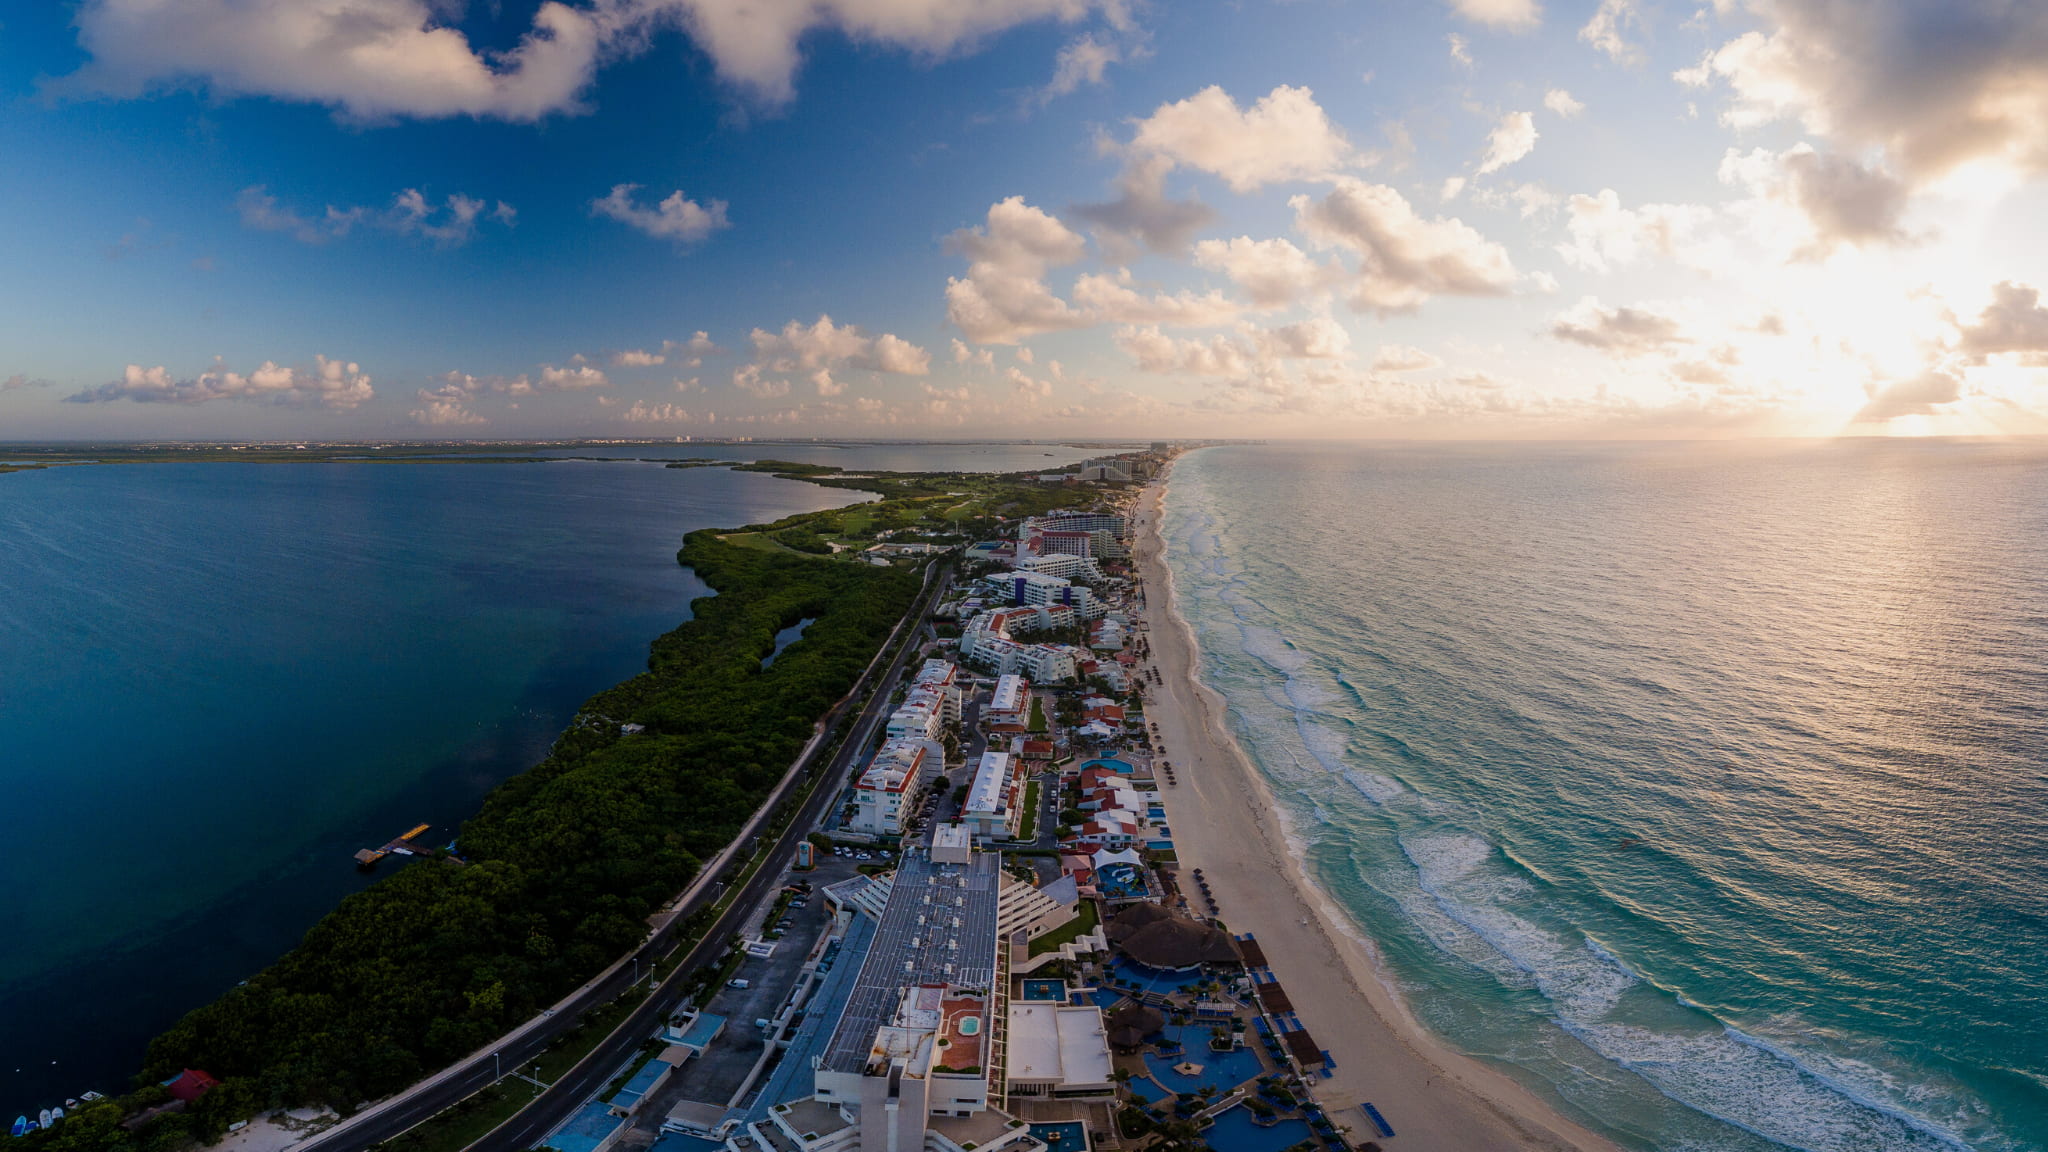 Mar y laguna foto aerea Cancún